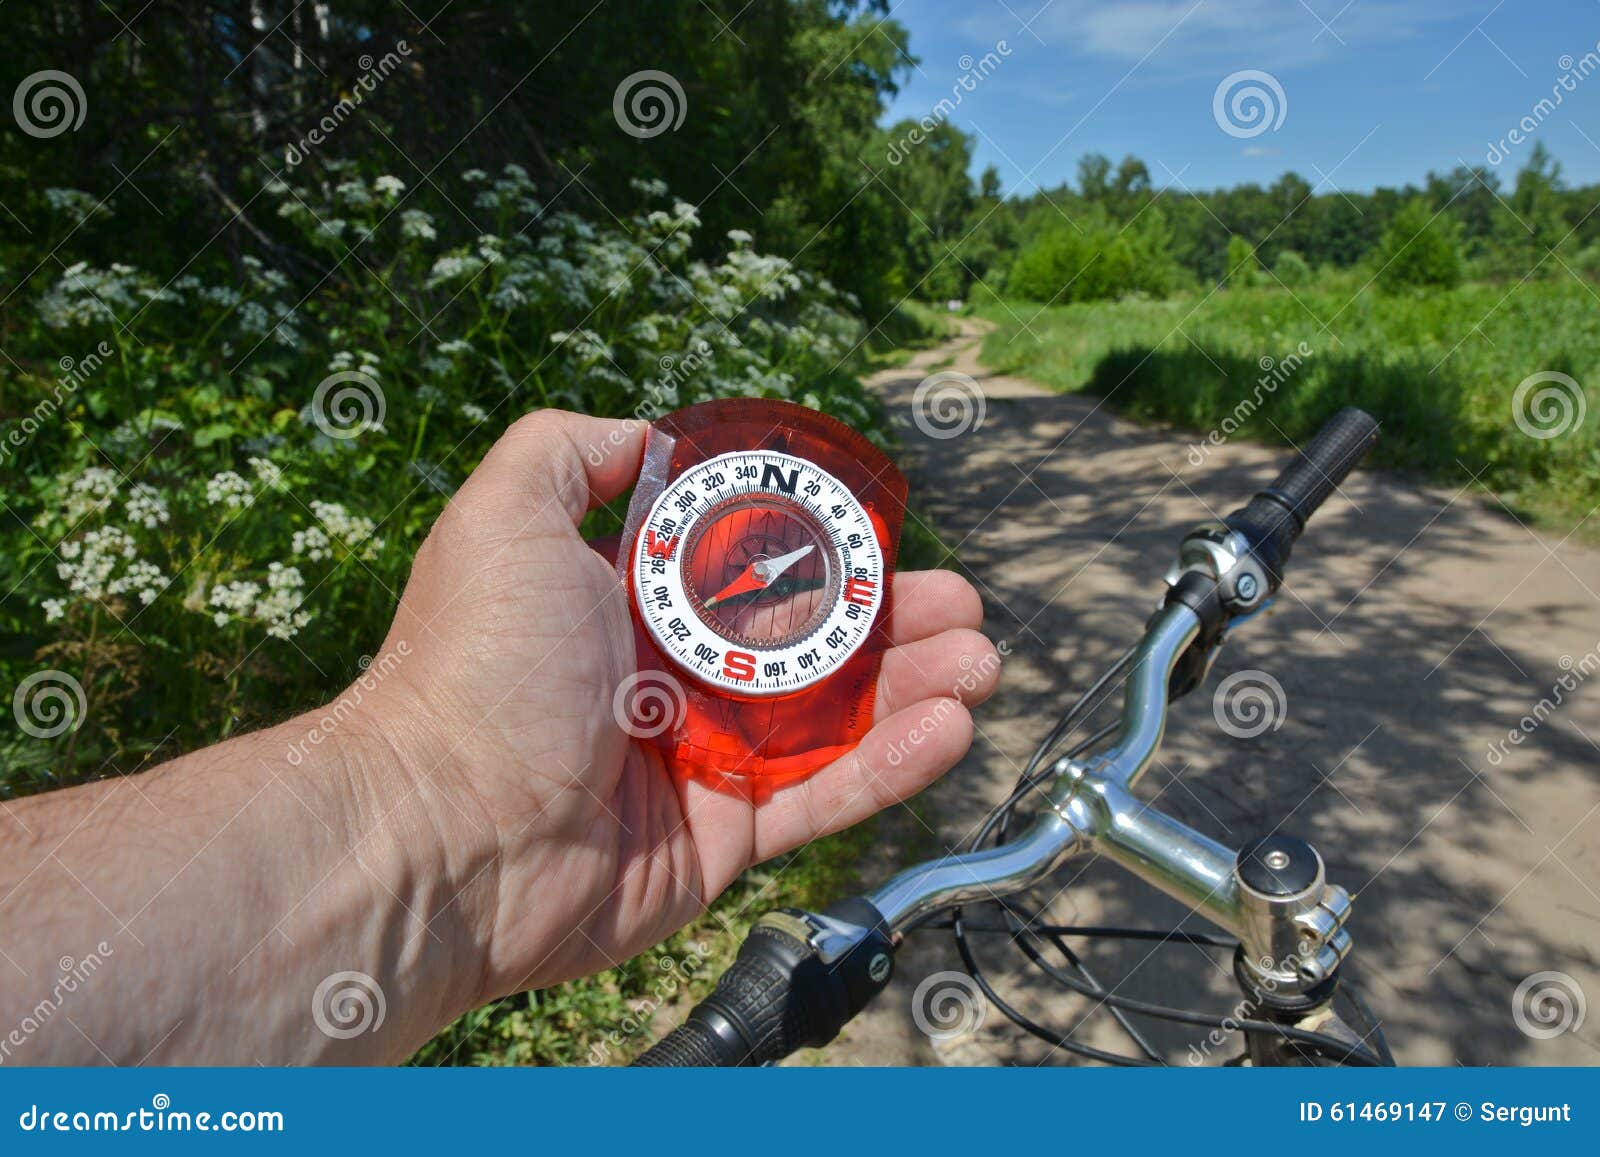 Veroveraar Beg Dialoog Kompas en fiets stock afbeelding. Image of buiten, bevinding - 61469147